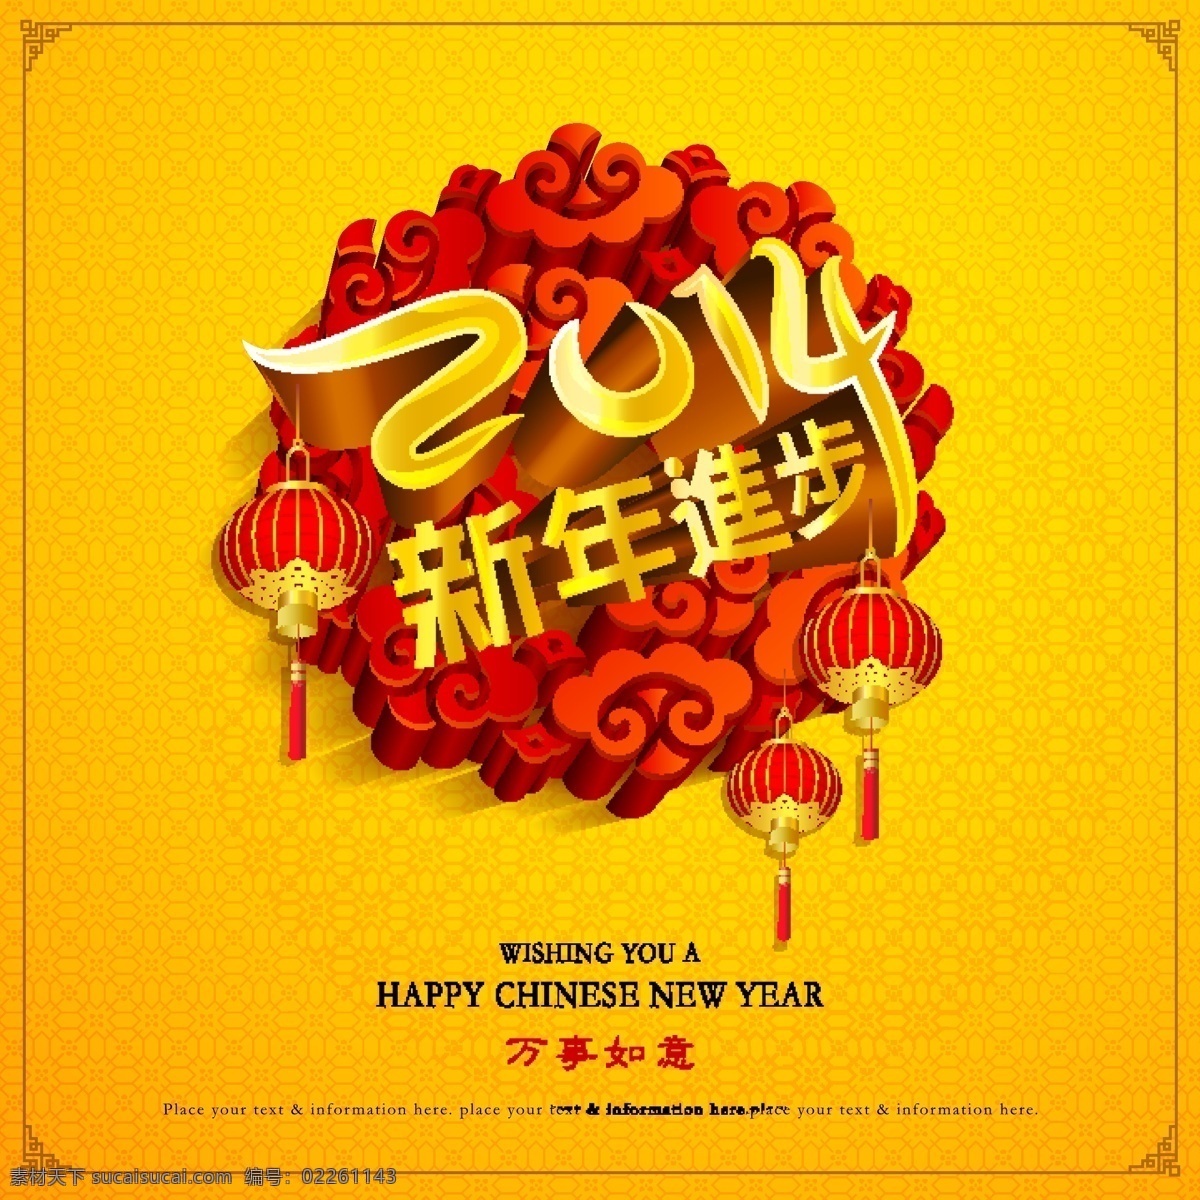 2014 新年贺卡 矢量 eps格式 贺卡 红色 黄色 新年 新年快乐 矢量图